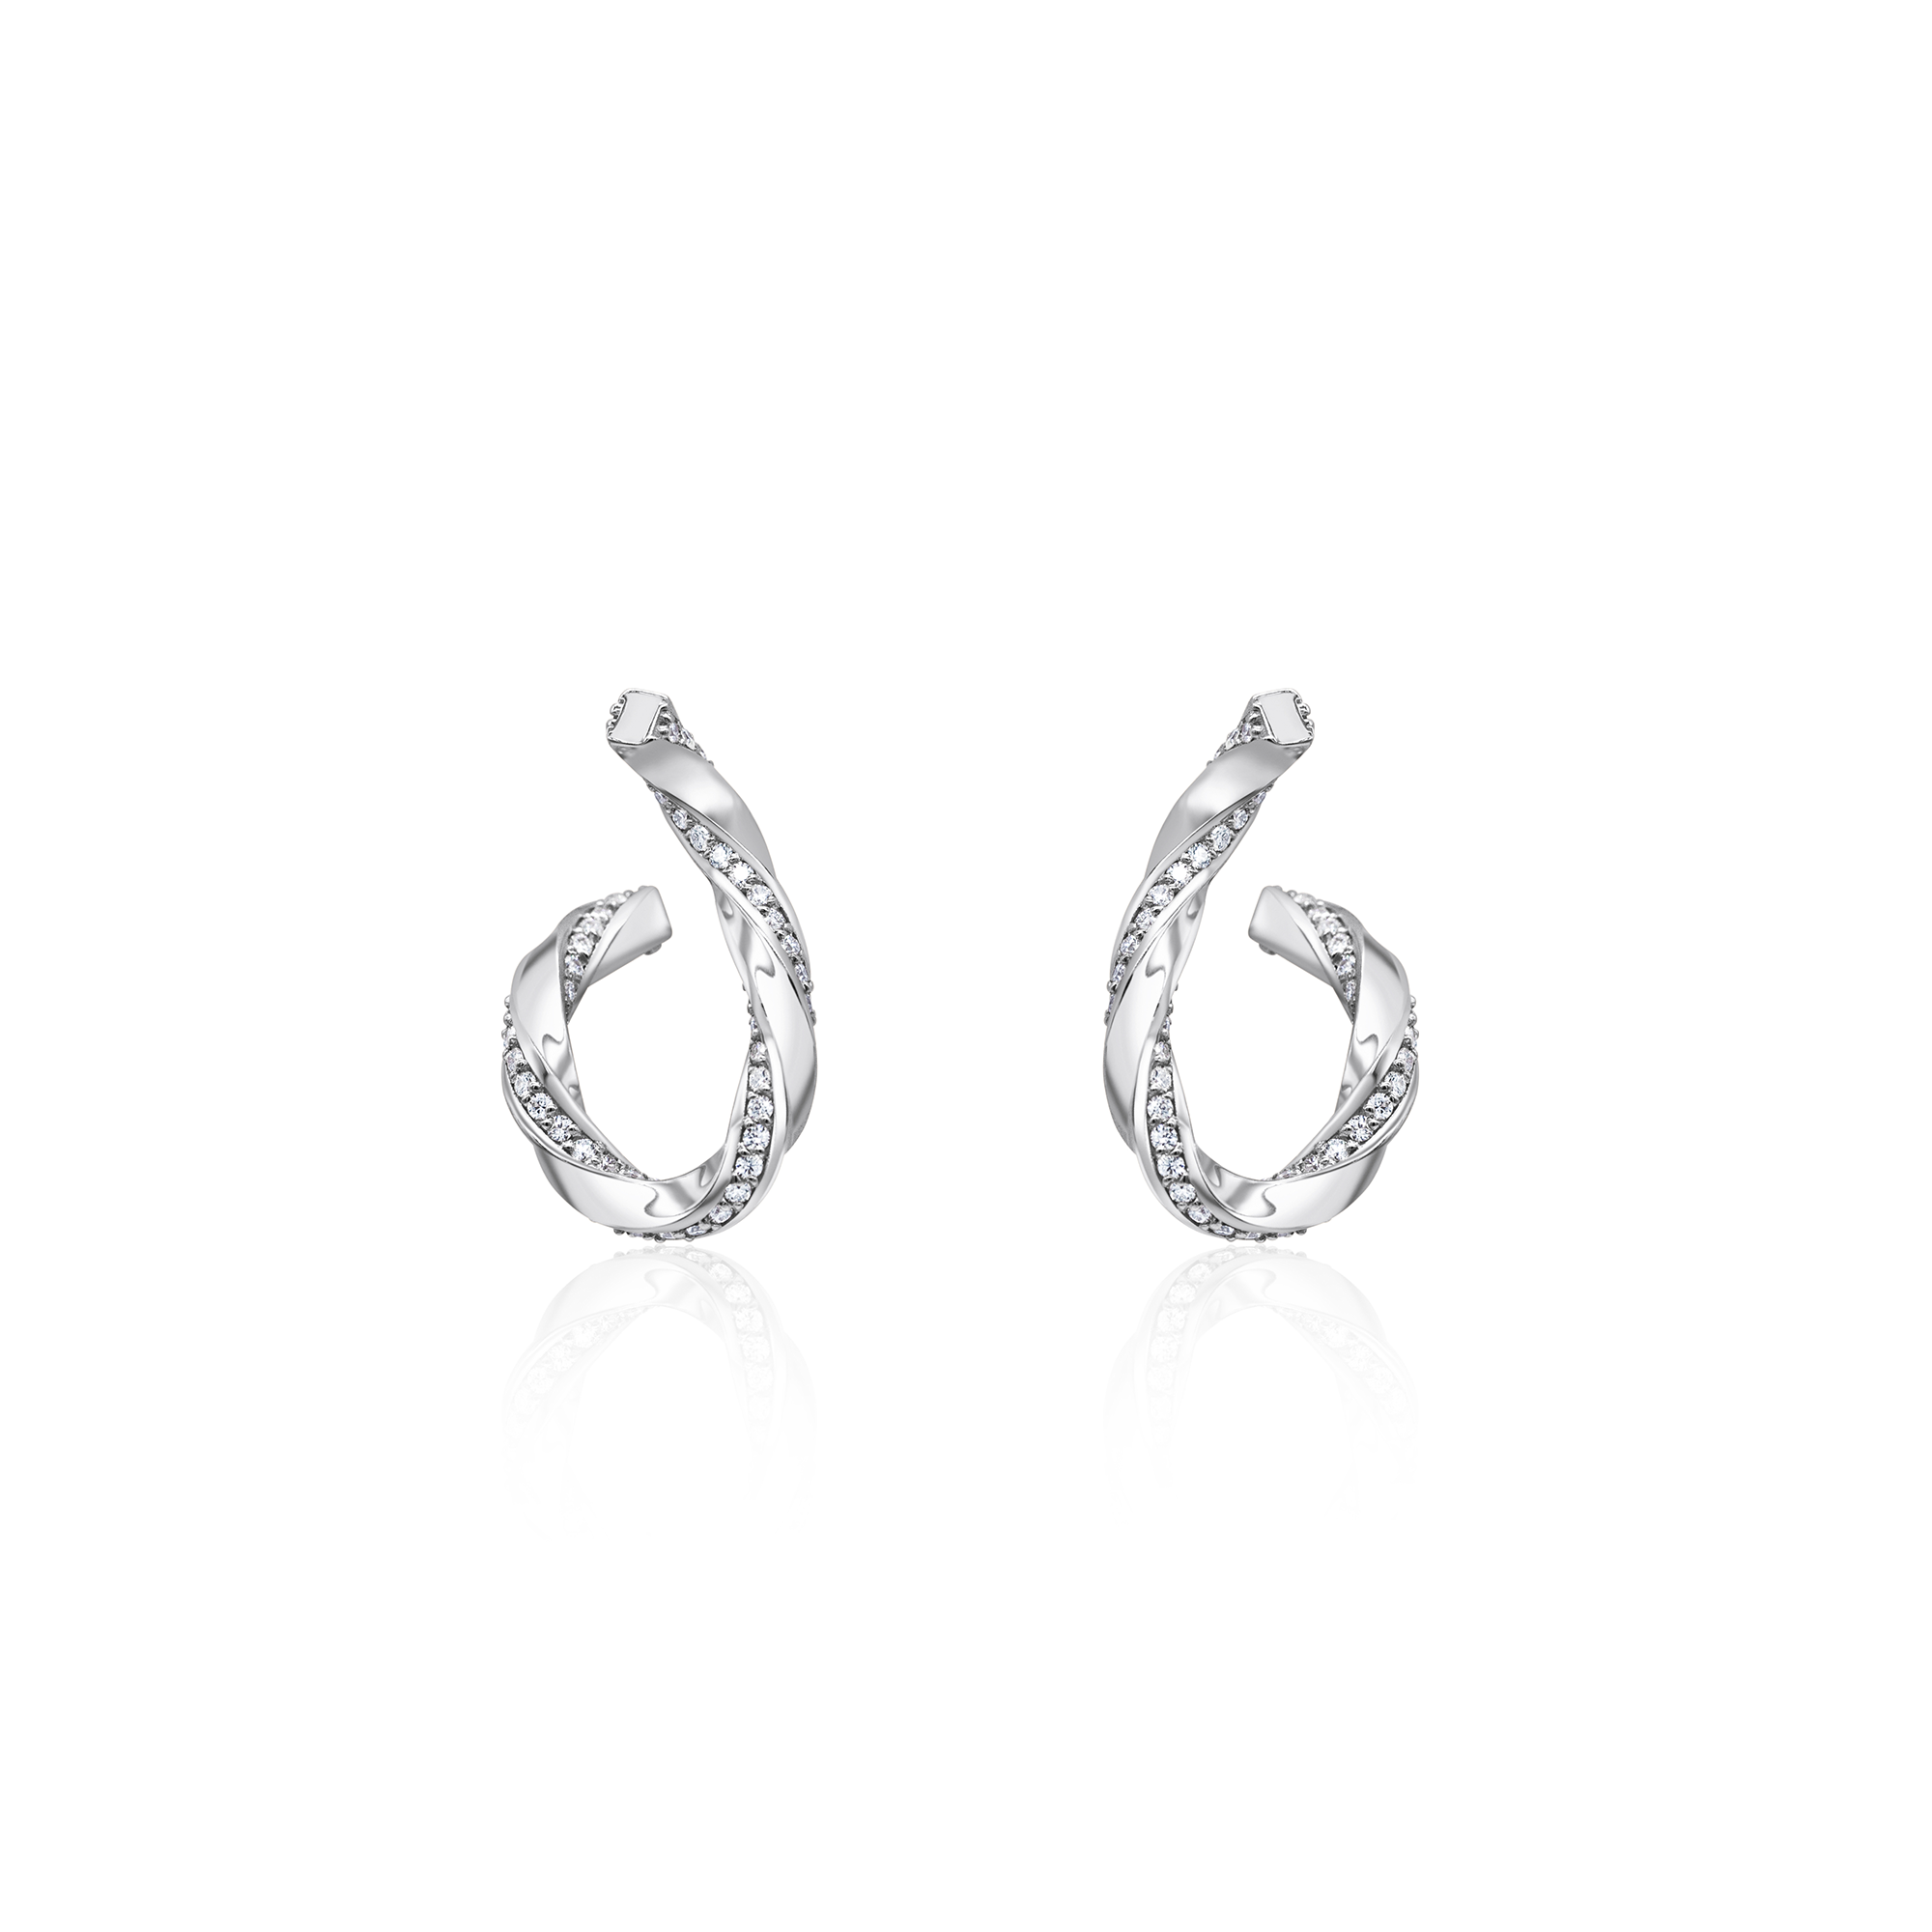 Bezel Set Baguette & Baguette Cut Diamond Full Eternity Earrings in 14K  White Gold at Rs 12000/piece in Surat